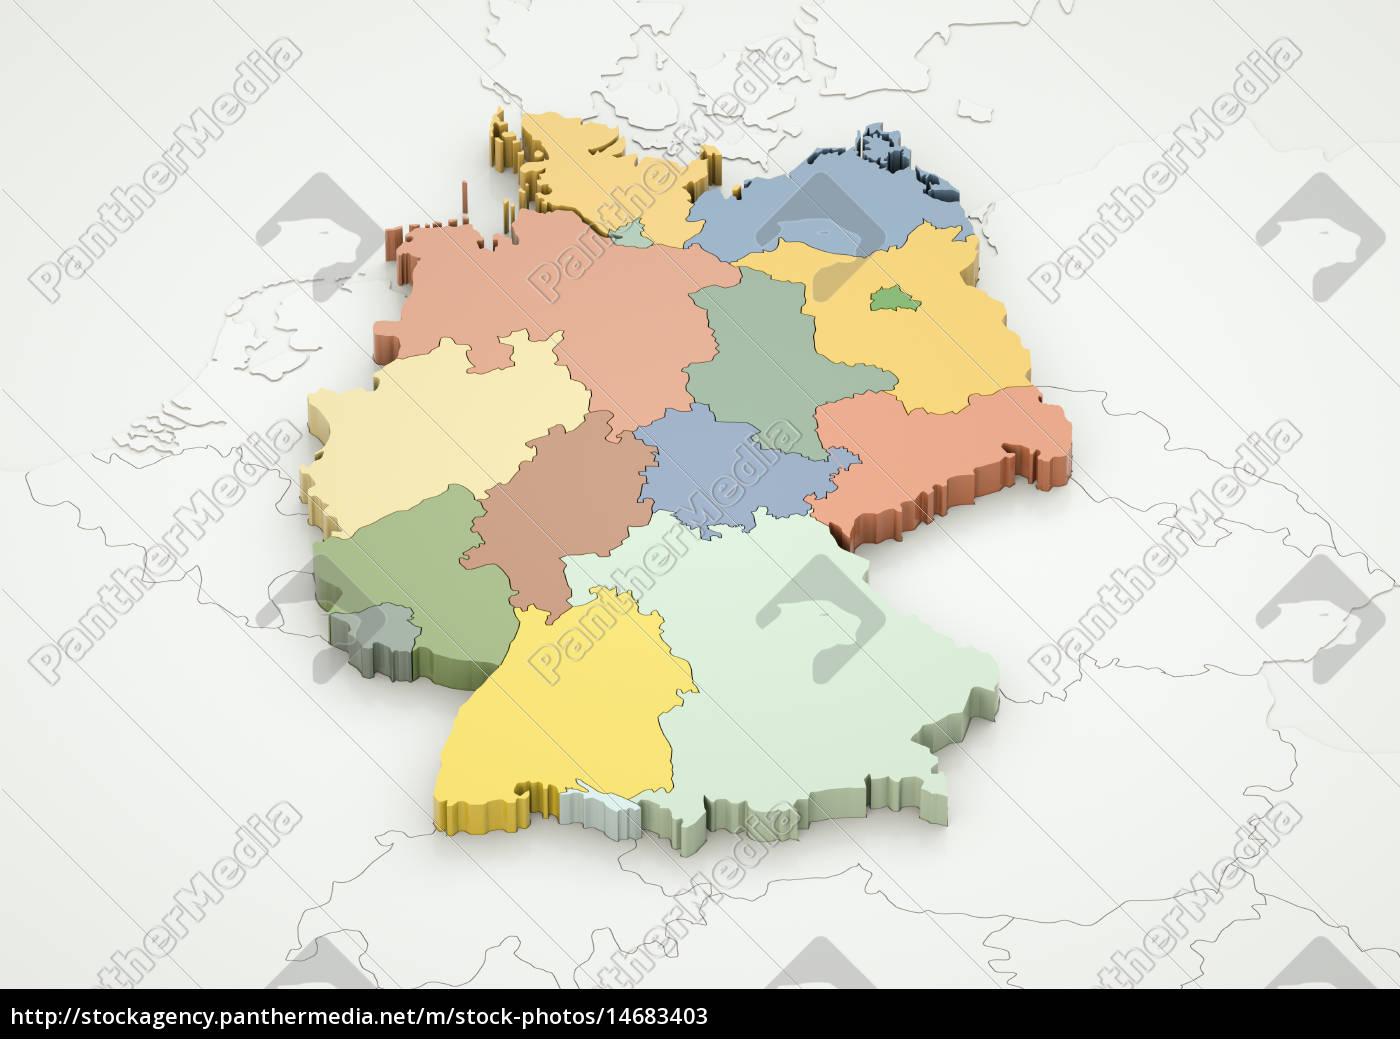 Hauptstadt an angrenzende länder deutschland mit Bundesland Rheinland